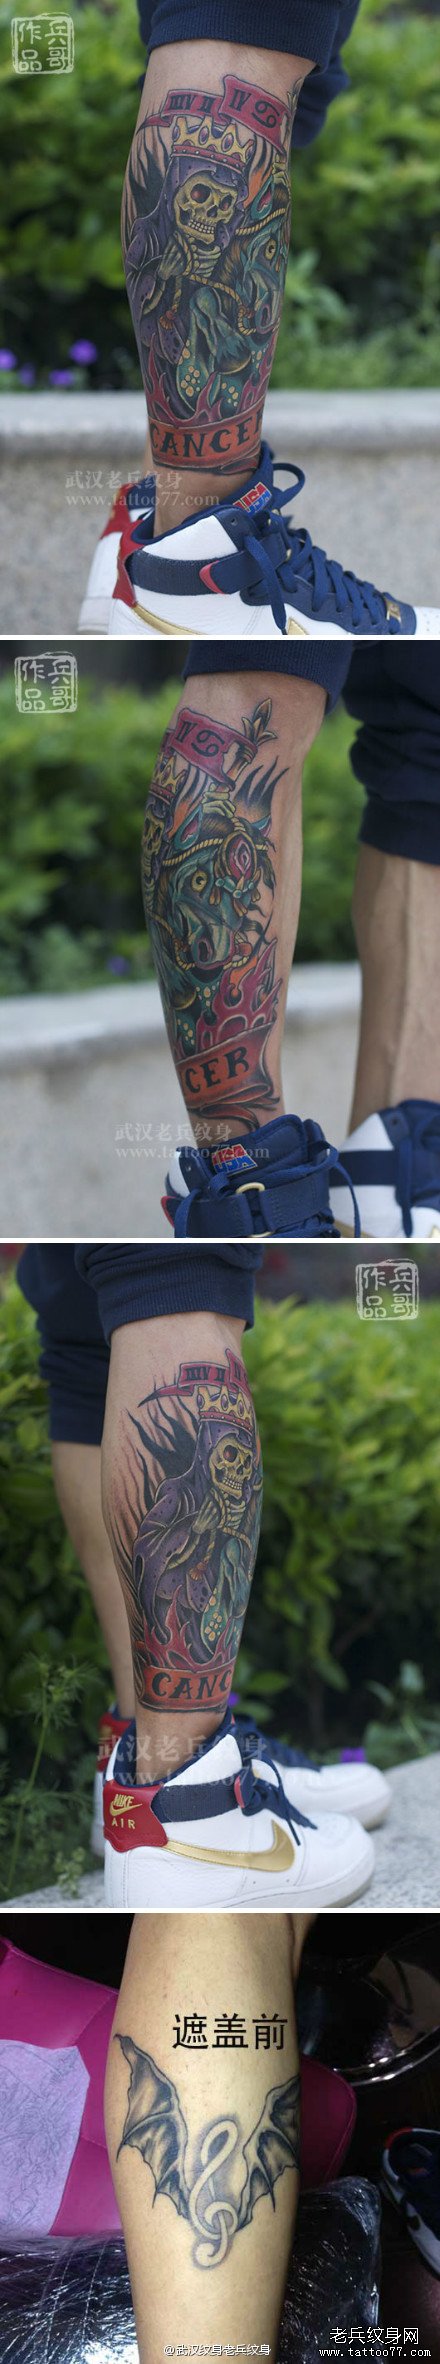 小腿school骷髅纹身图案作品遮盖旧纹身由武汉兵哥制作